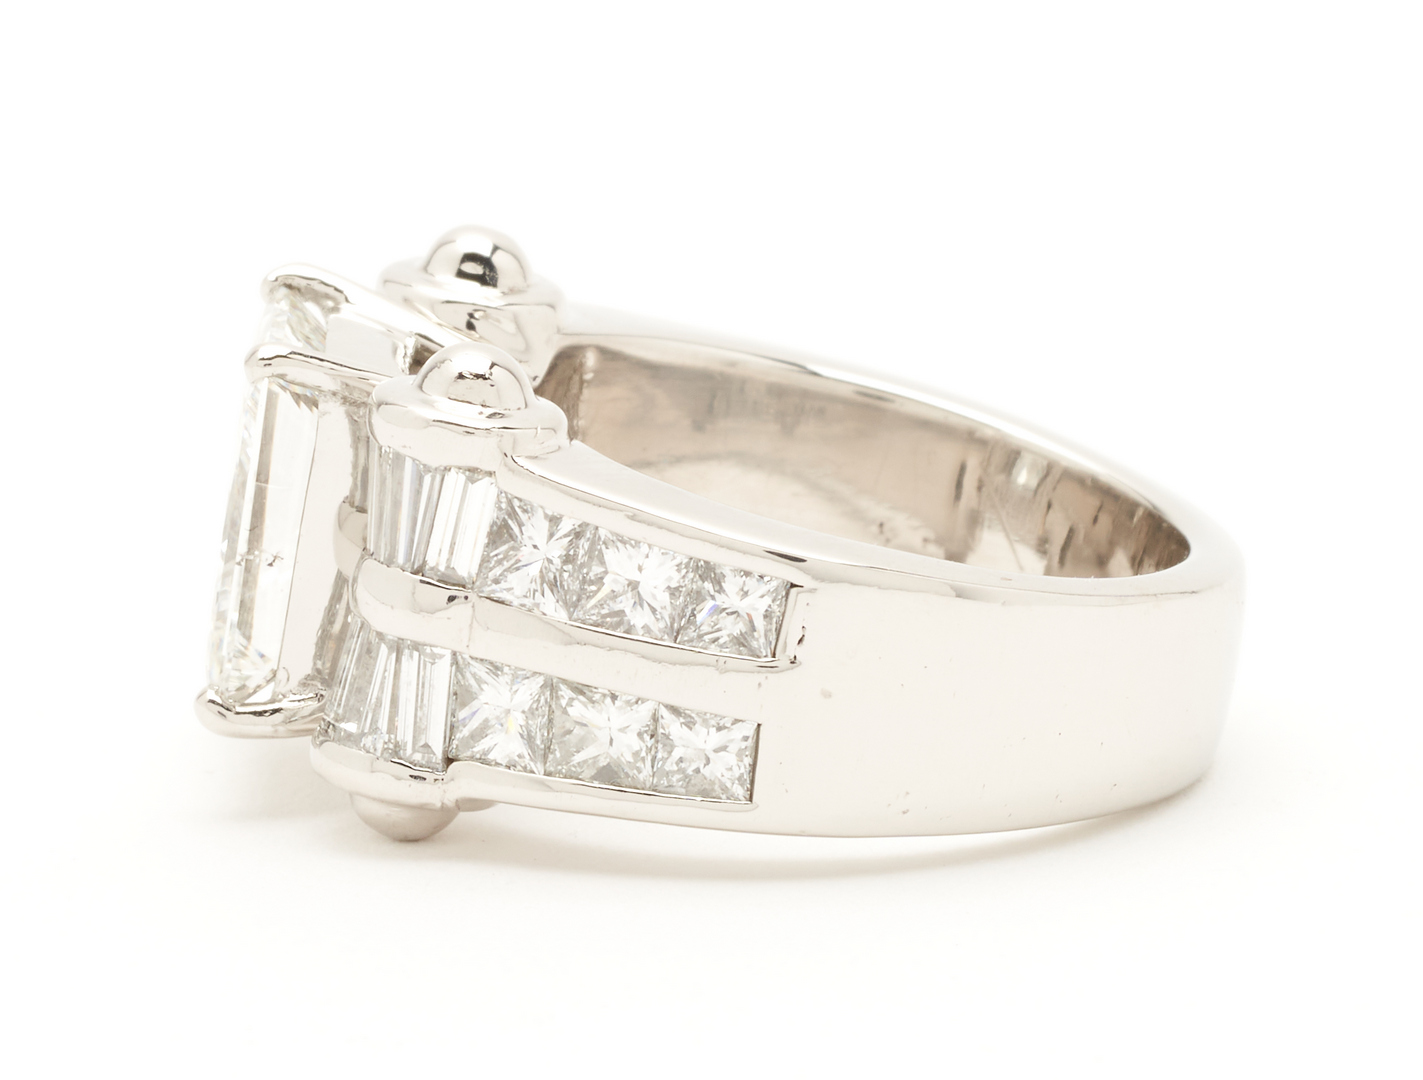 Lot 63: Platinum 4.00 Carat GIA Princess Cut Diamond Ring, 5.68 Total Carat Weight